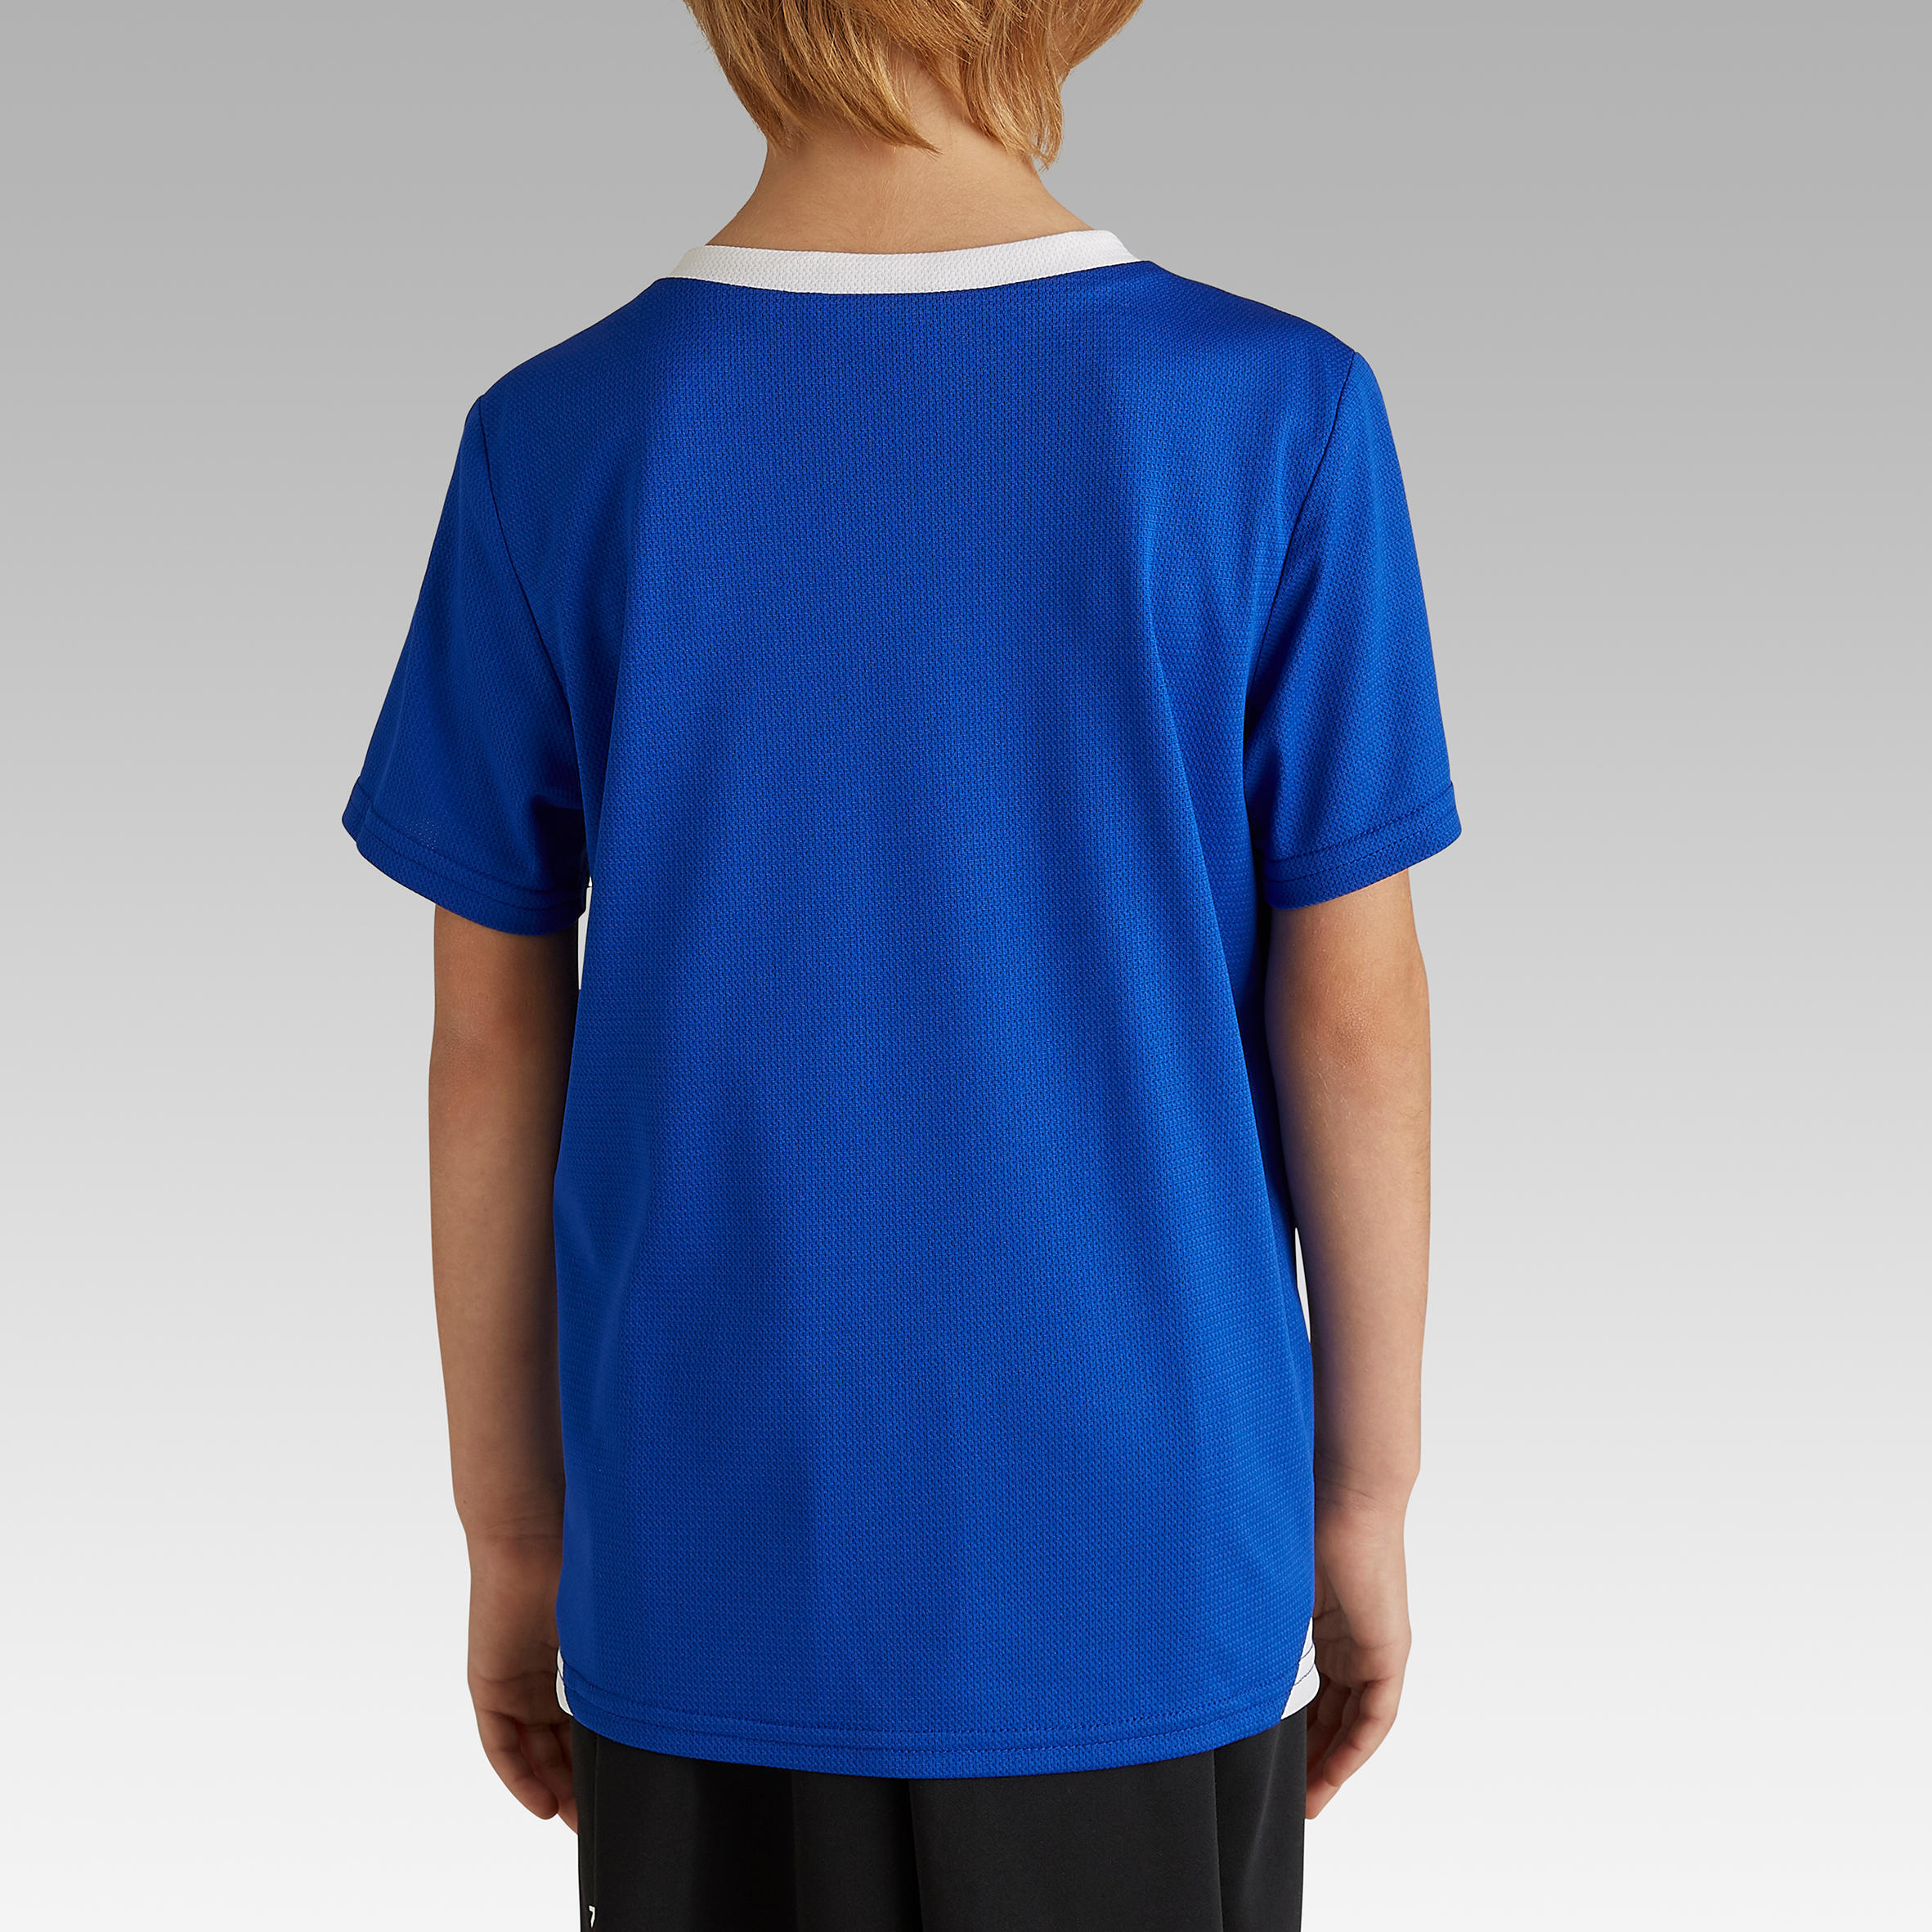 Kids' Football Shirt Essential - Blue 4/8